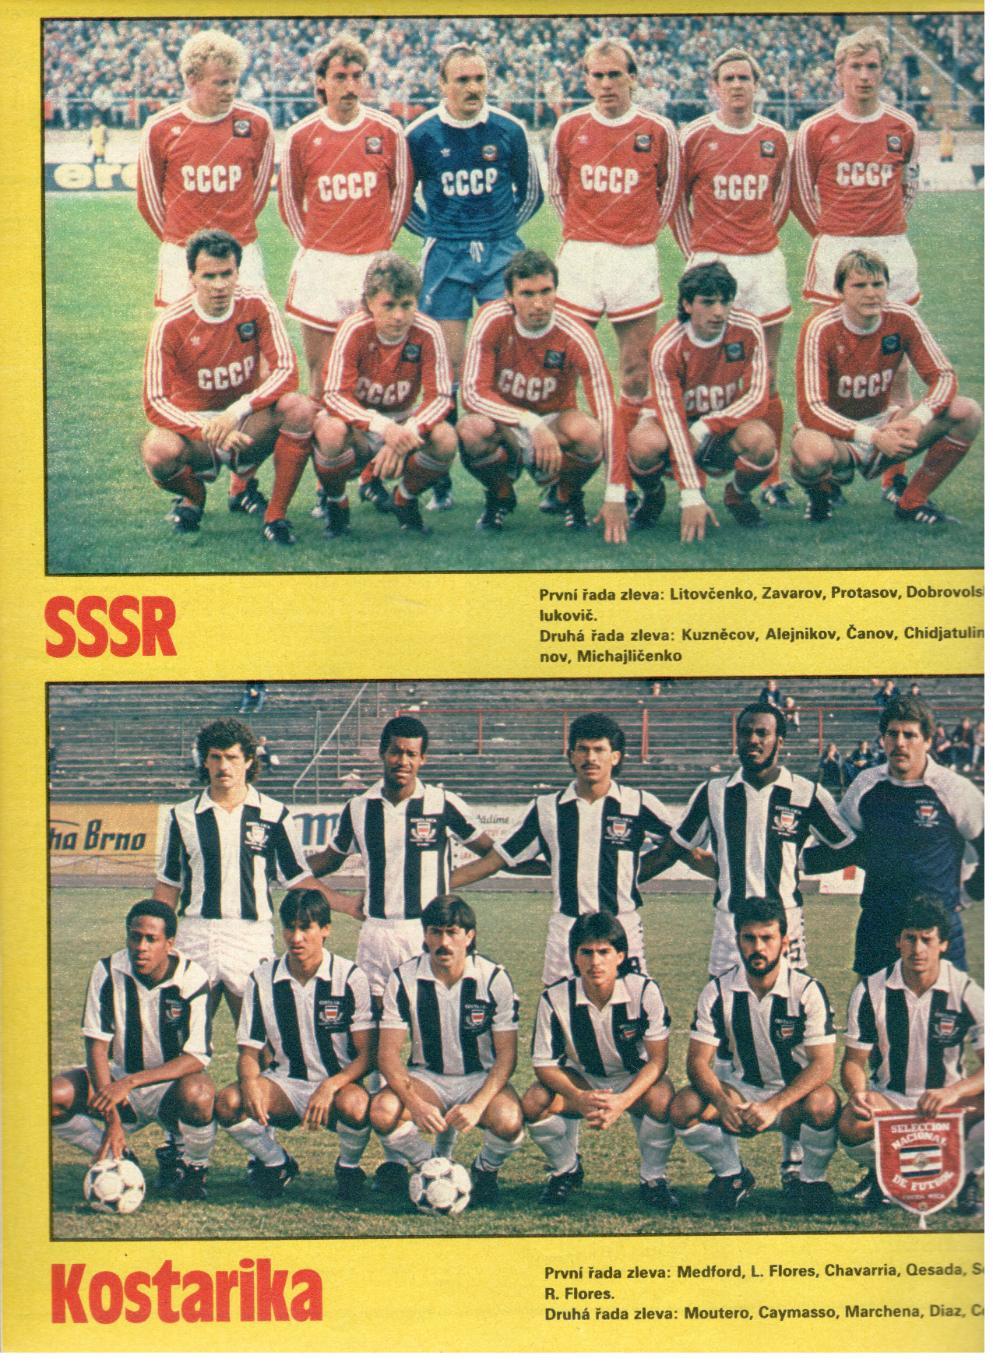 Участники чемпионата мира 1990. СССР, Коста-Рика